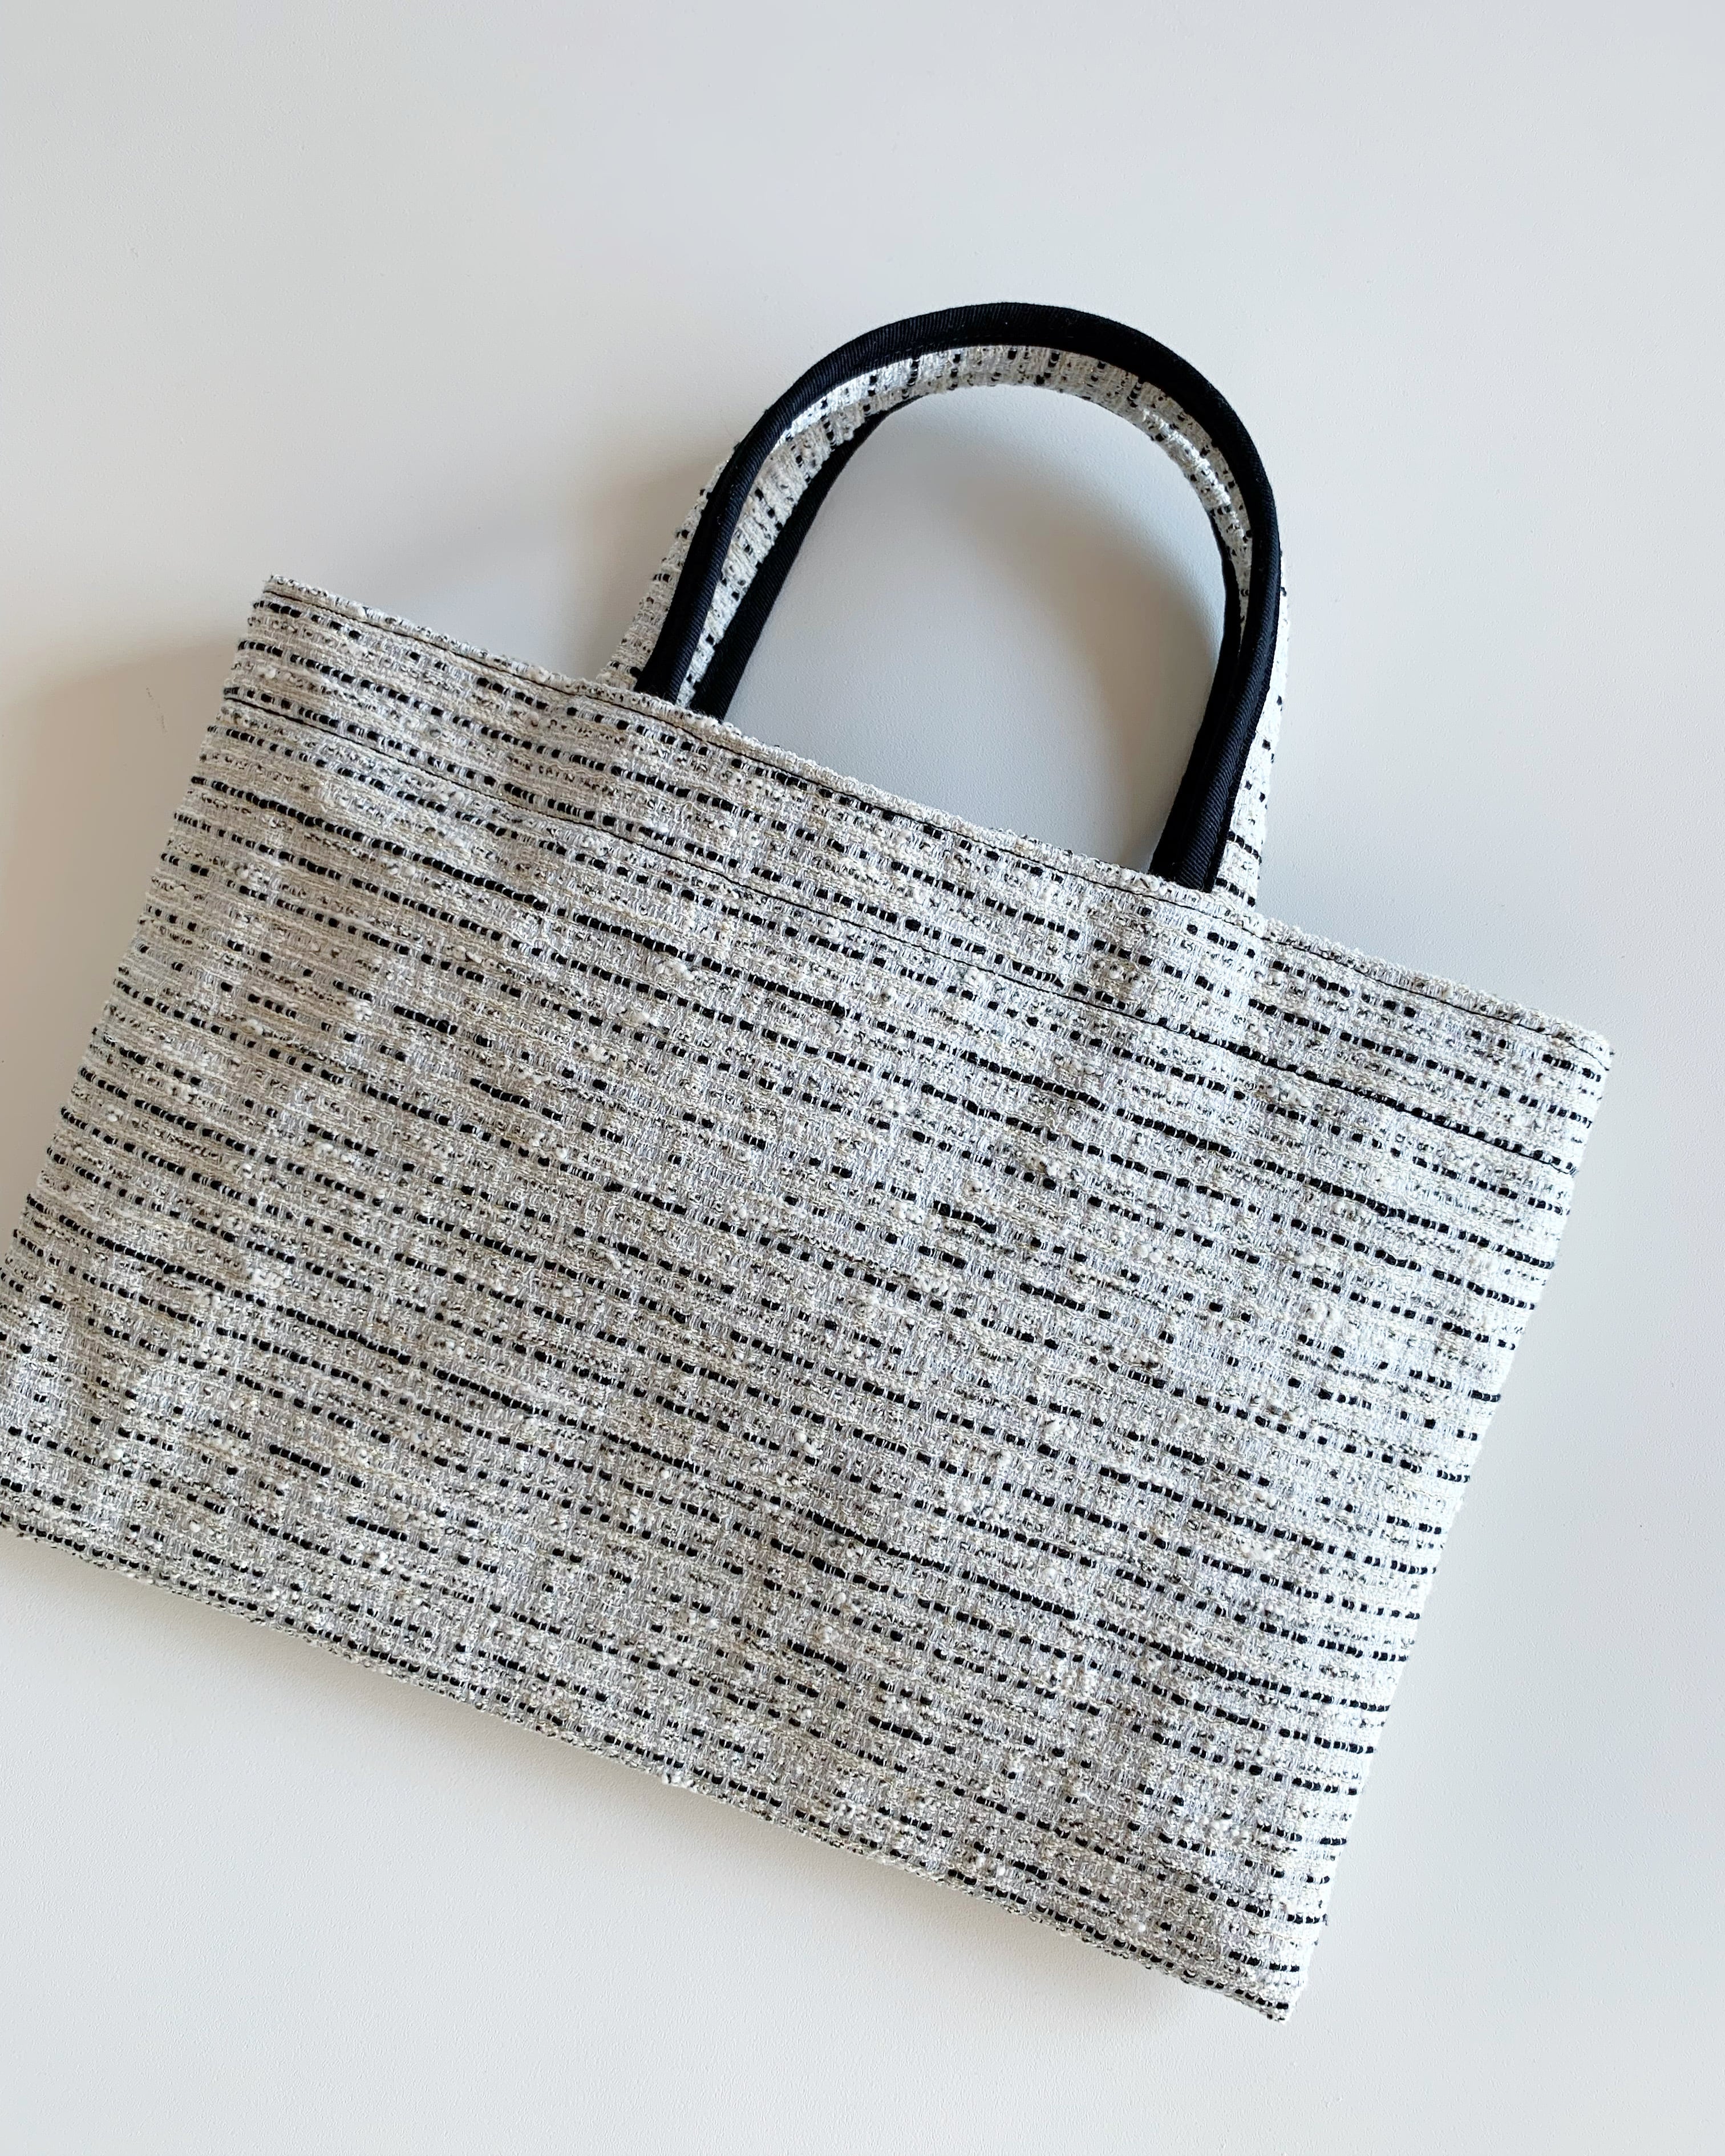 BIBI bag. “MIDDLE” tweed white | BIBI bag presented by BIBI soeurs.